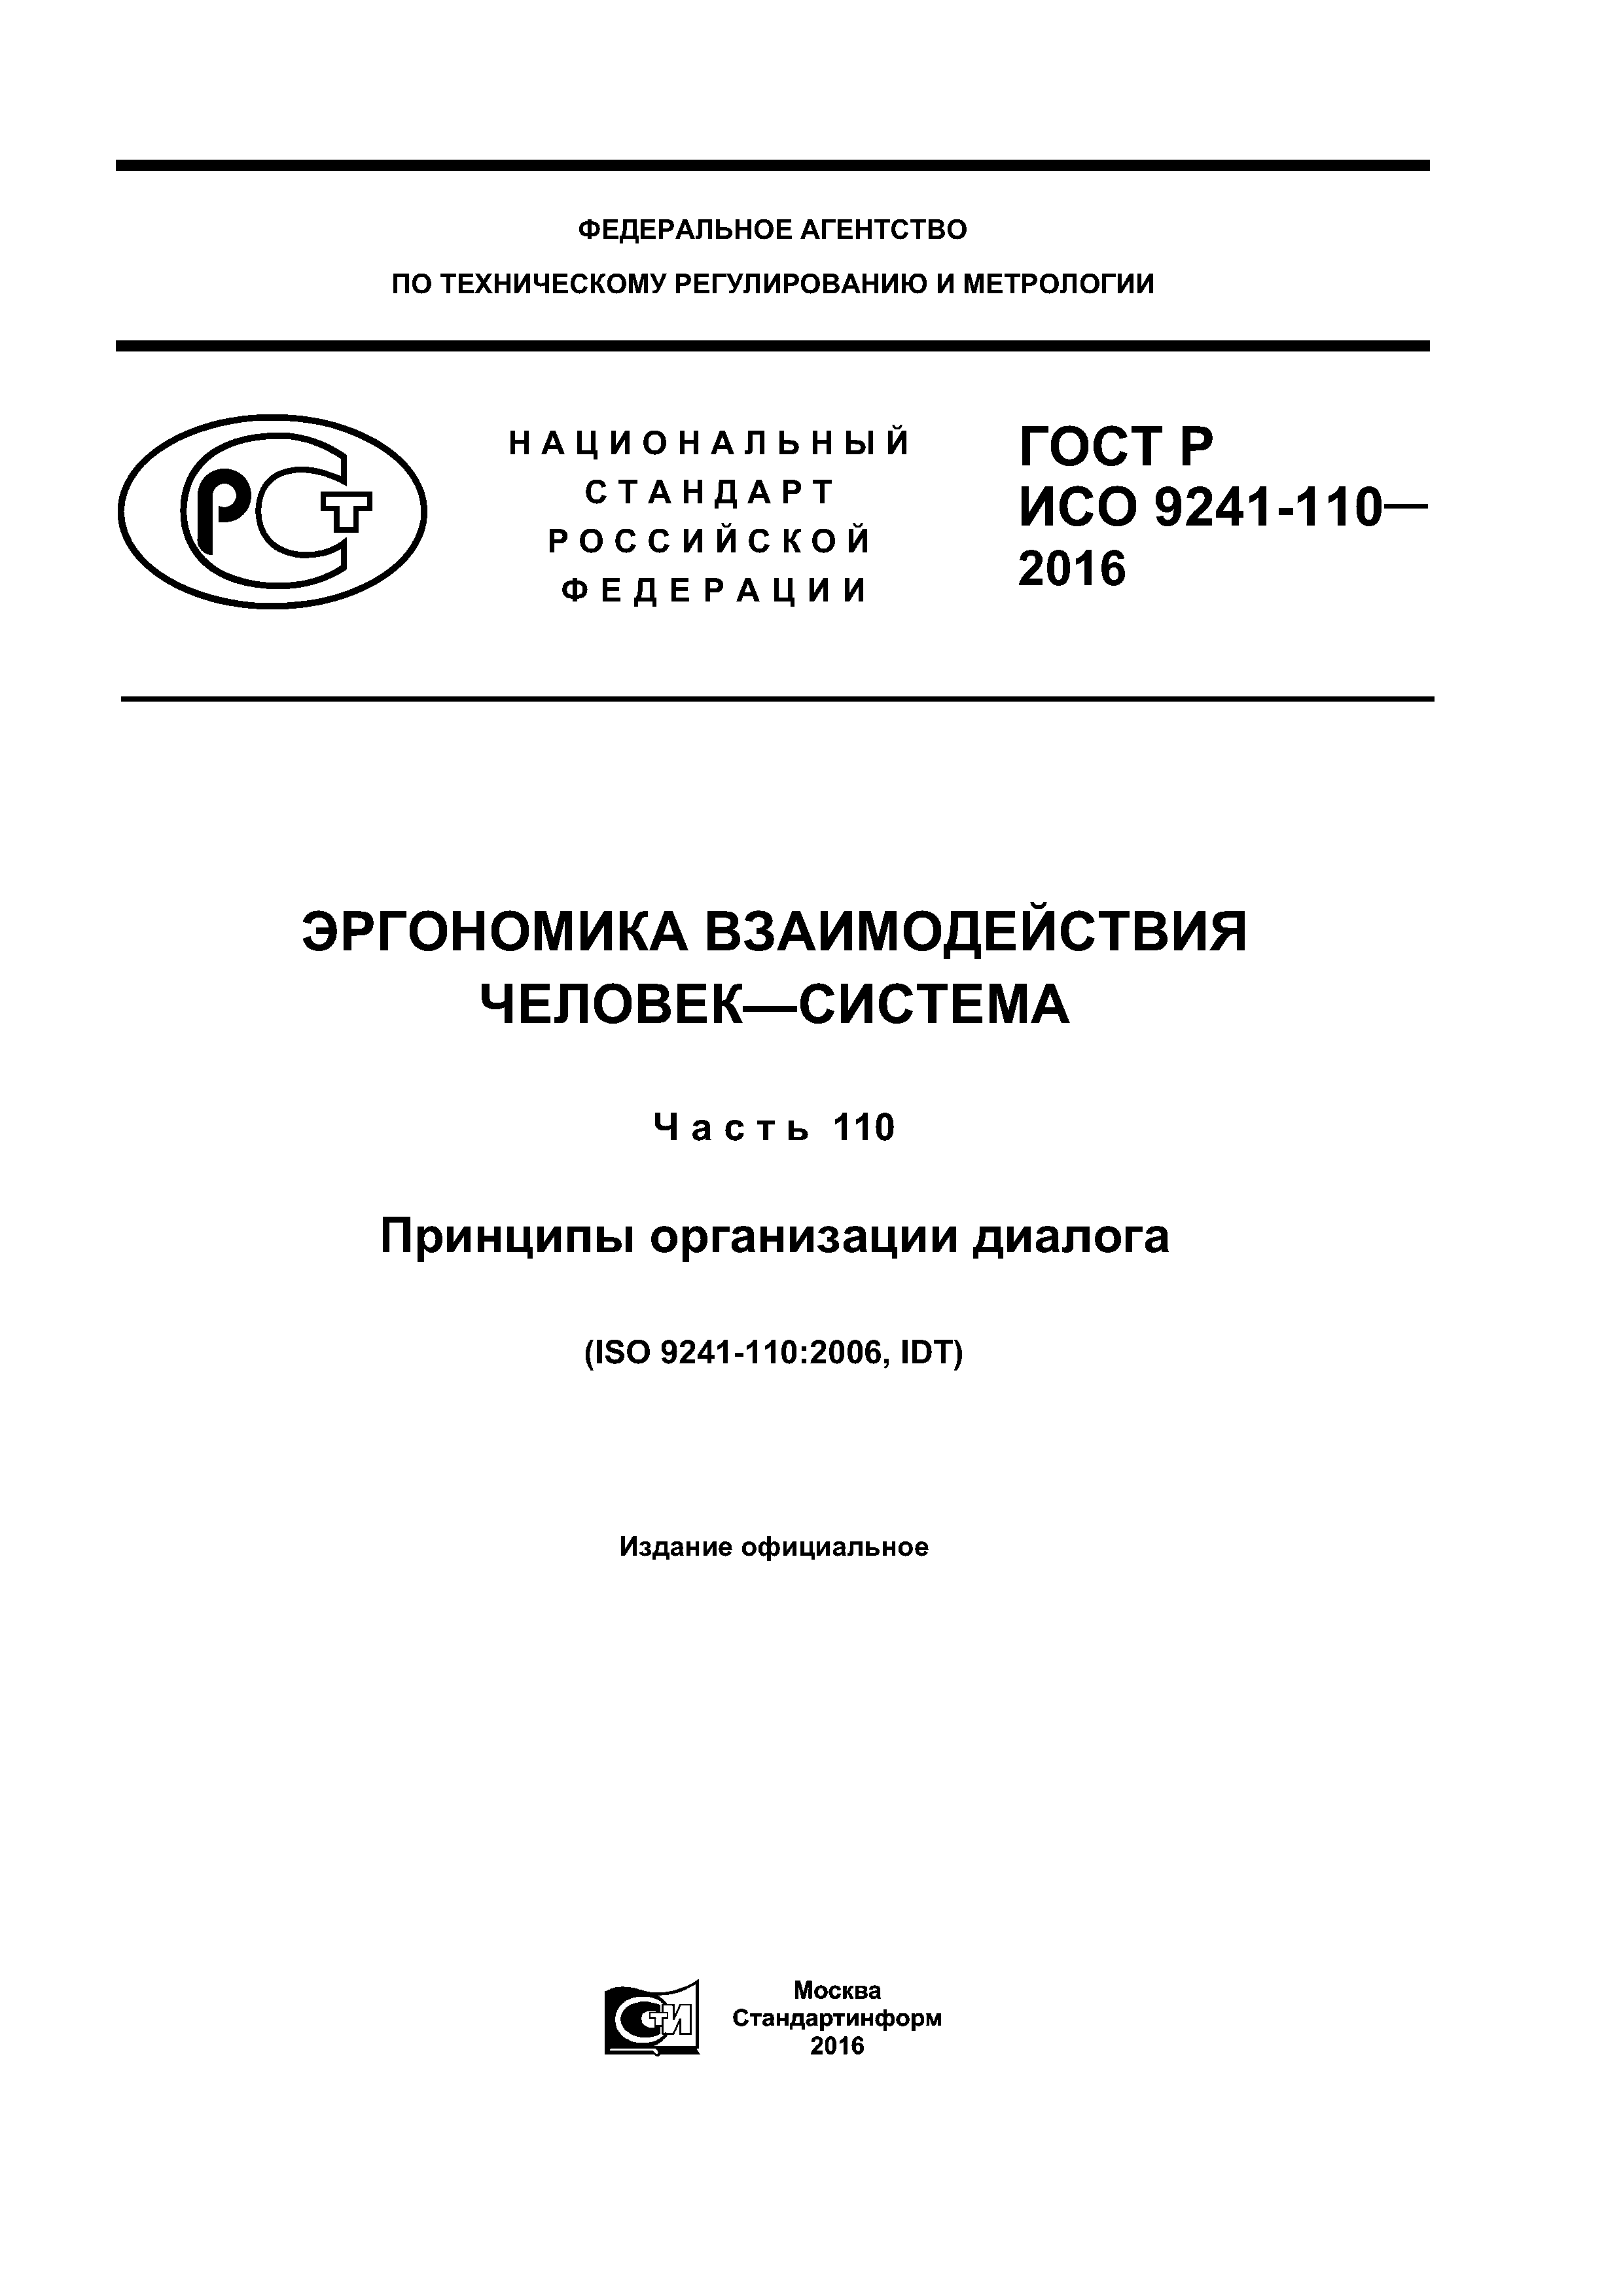 ГОСТ Р ИСО 9241-110-2016